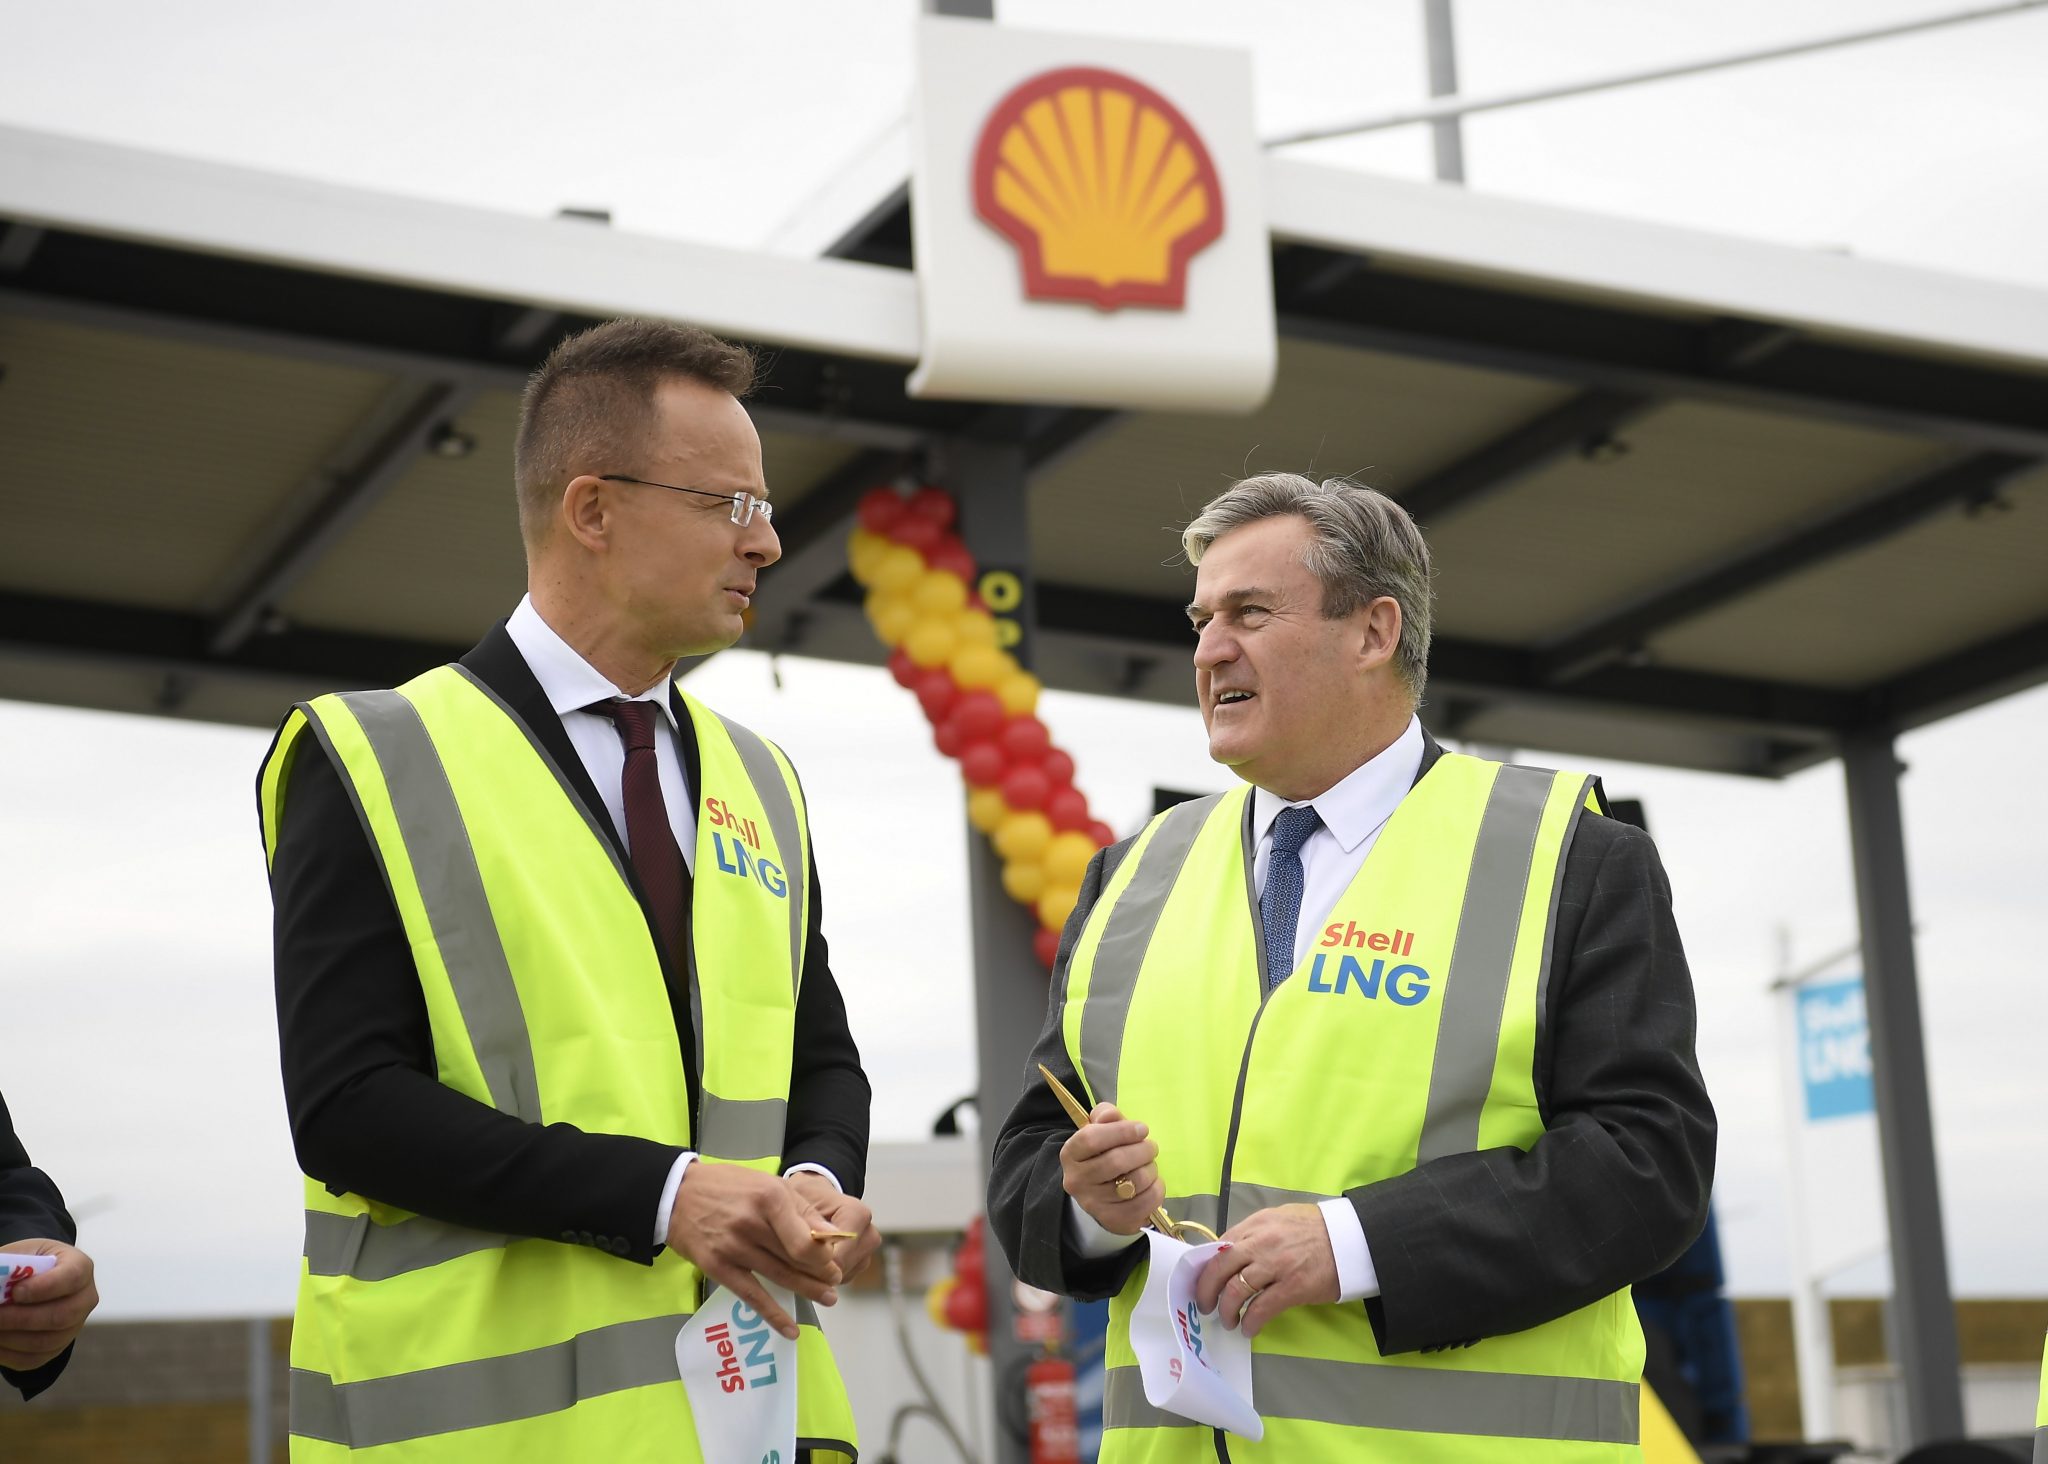 Shell eröffnet erste LNG-Tankstelle der Region in Ungarn